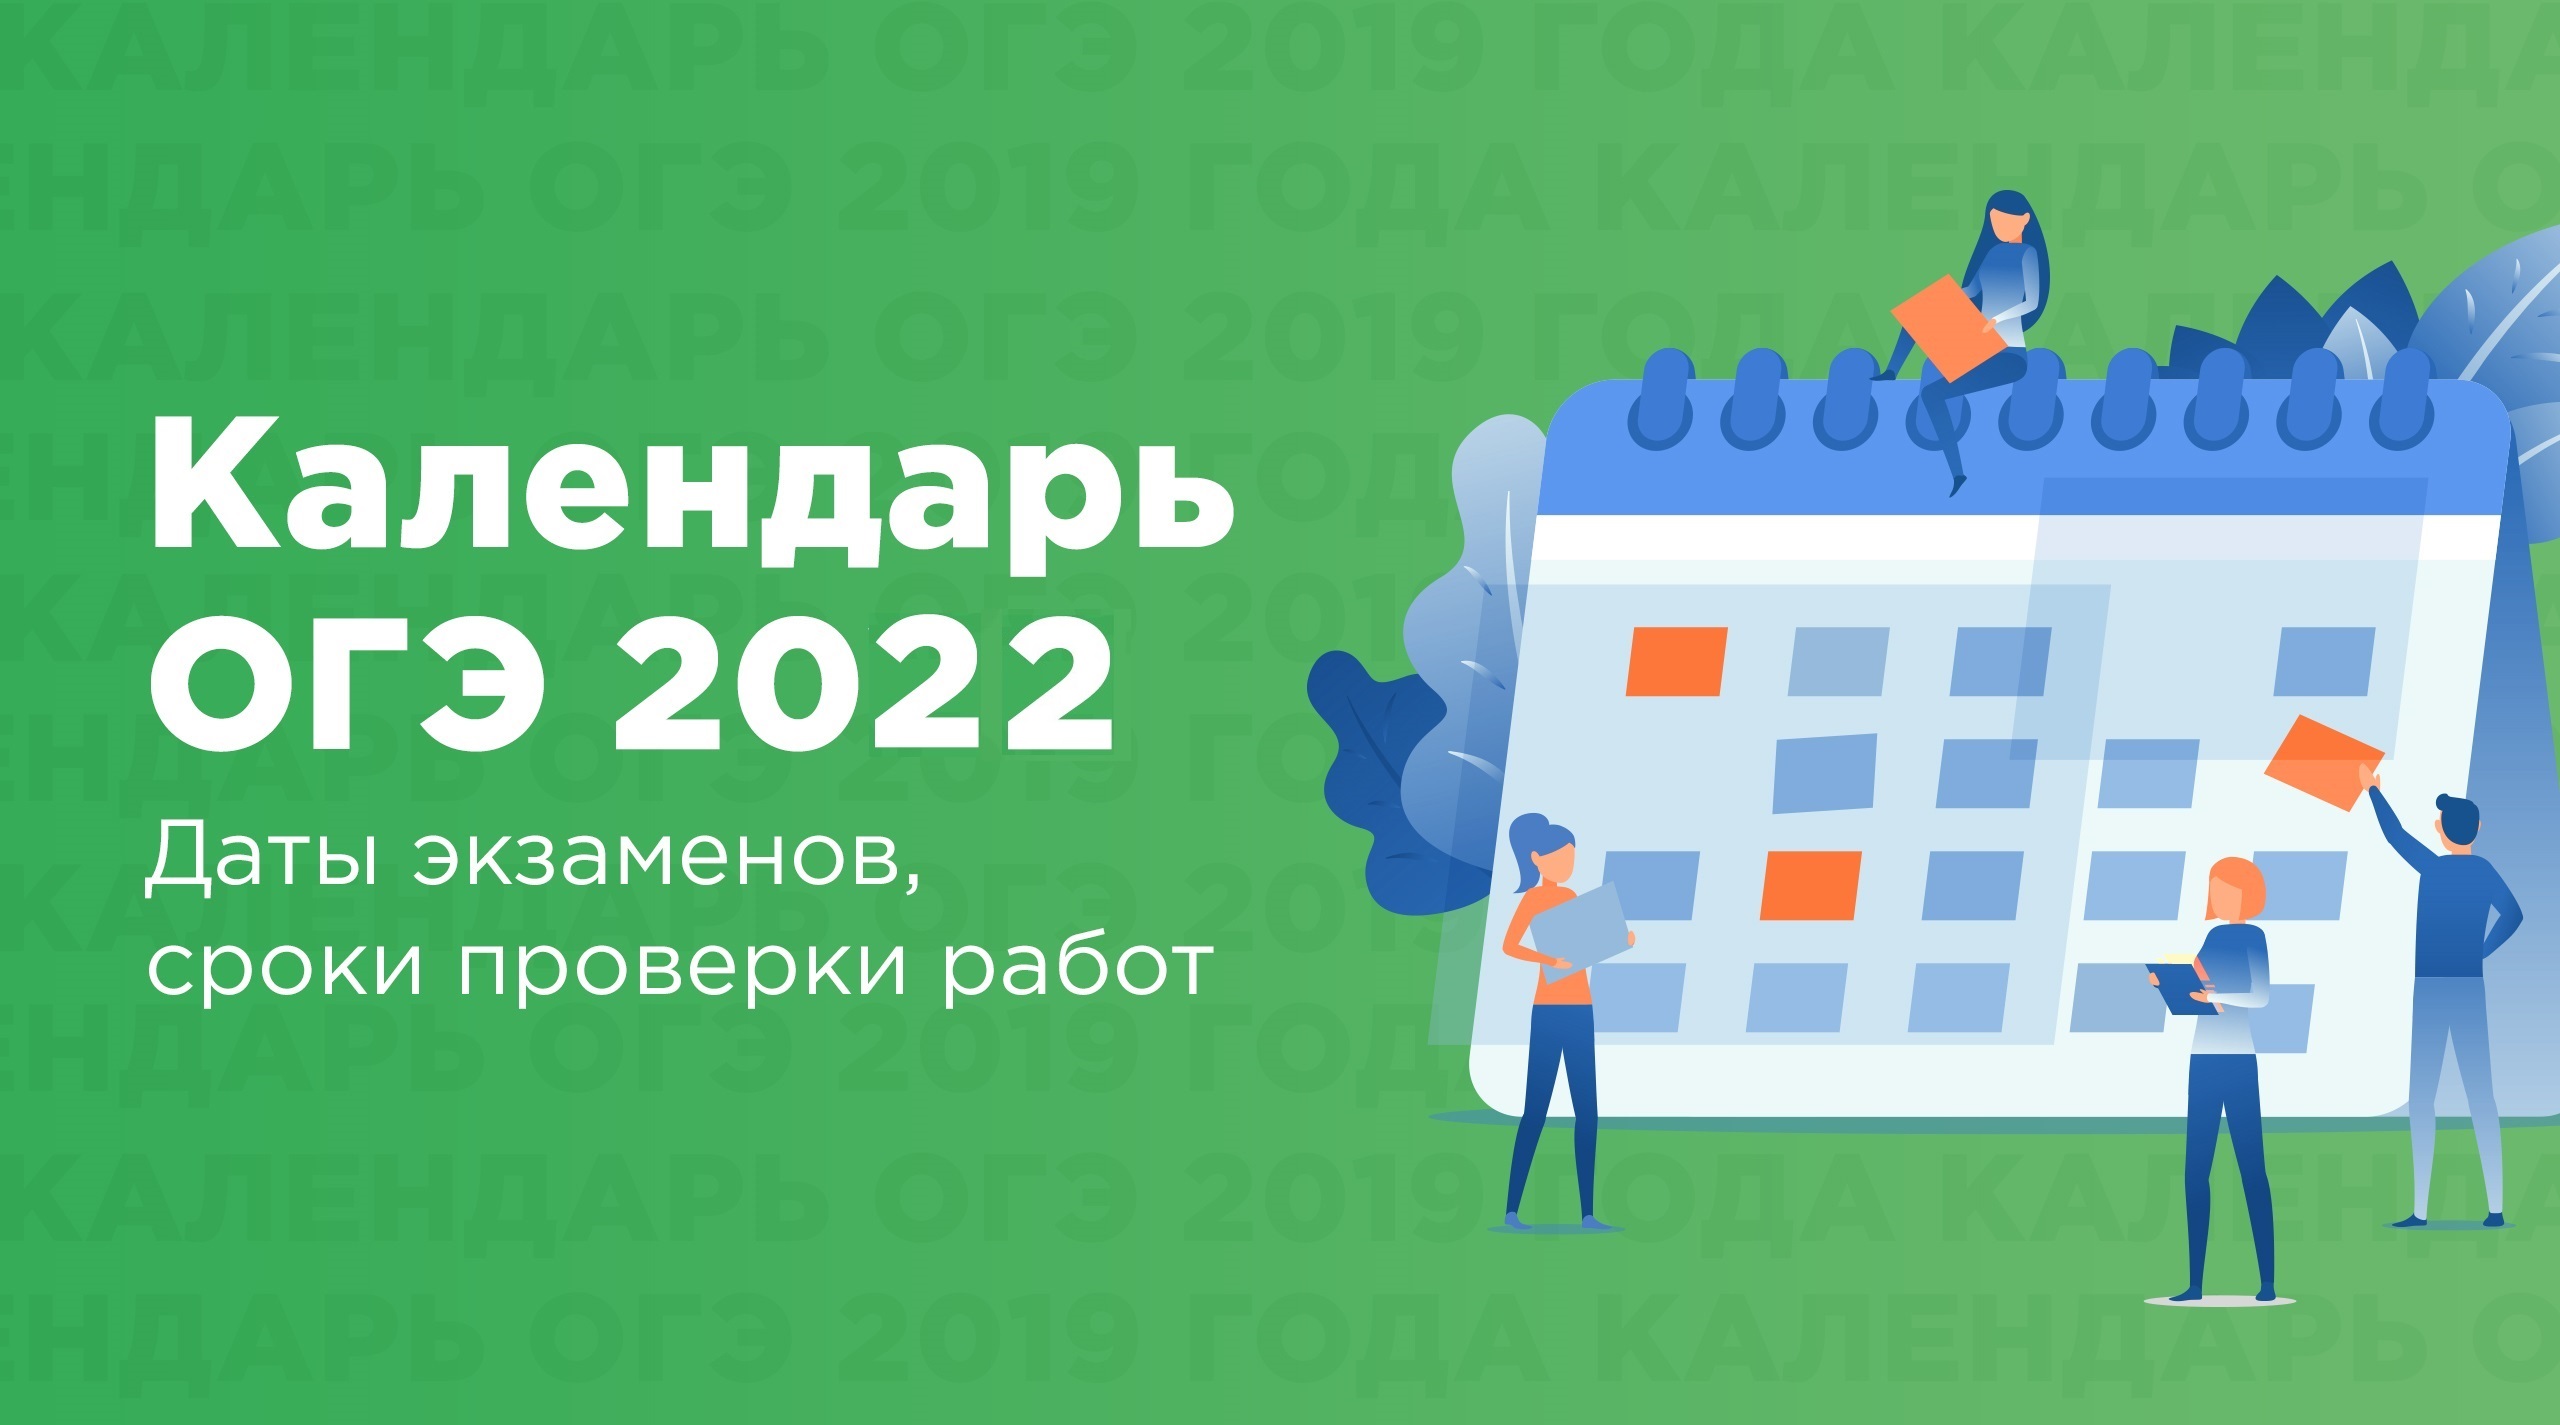 Календарь ОГЭ 2022 года